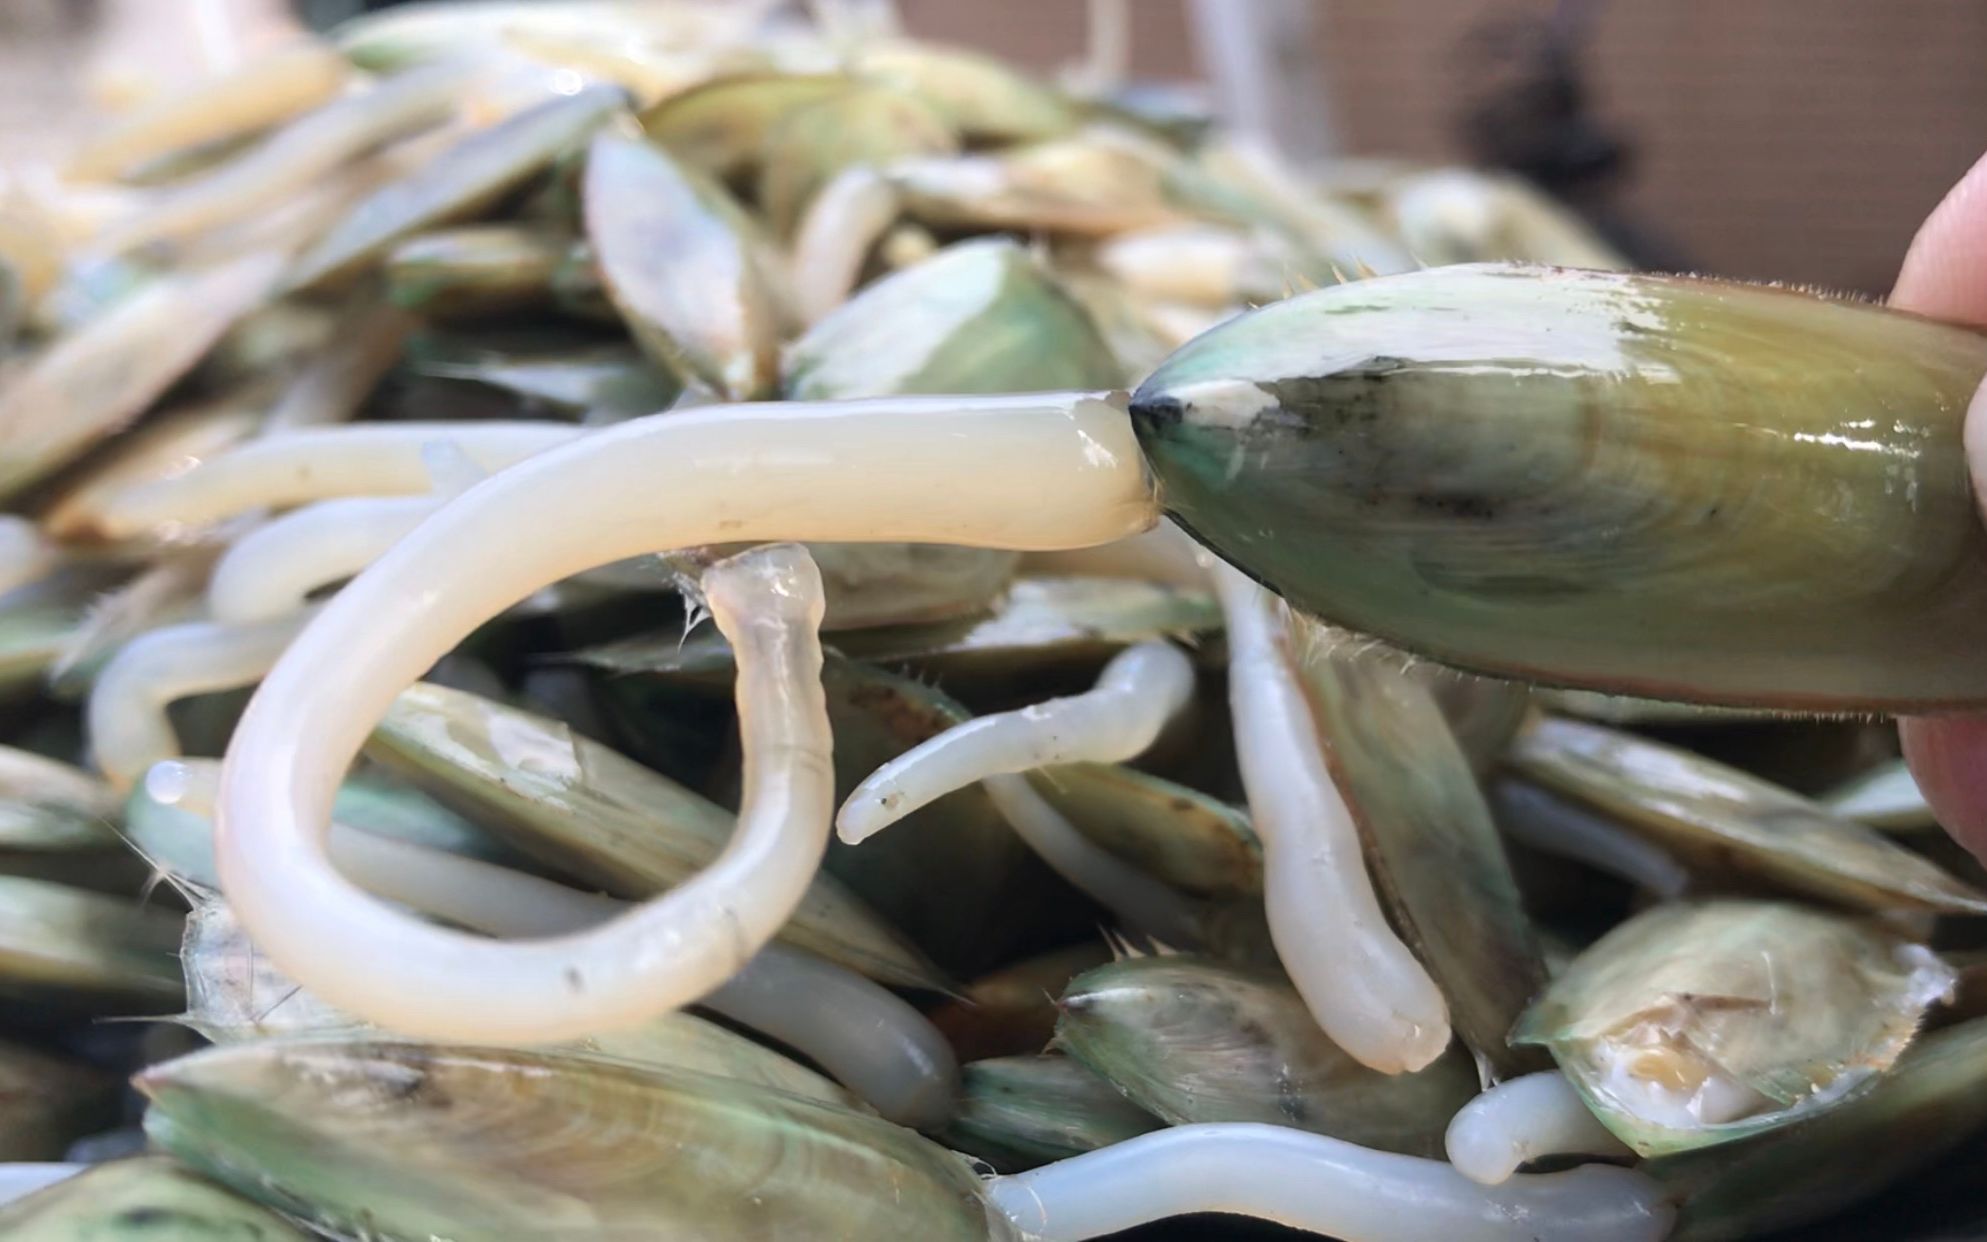 湛江的特色海鲜海豆芽,拿来煲汤特别营养,汤浓鲜香,少有